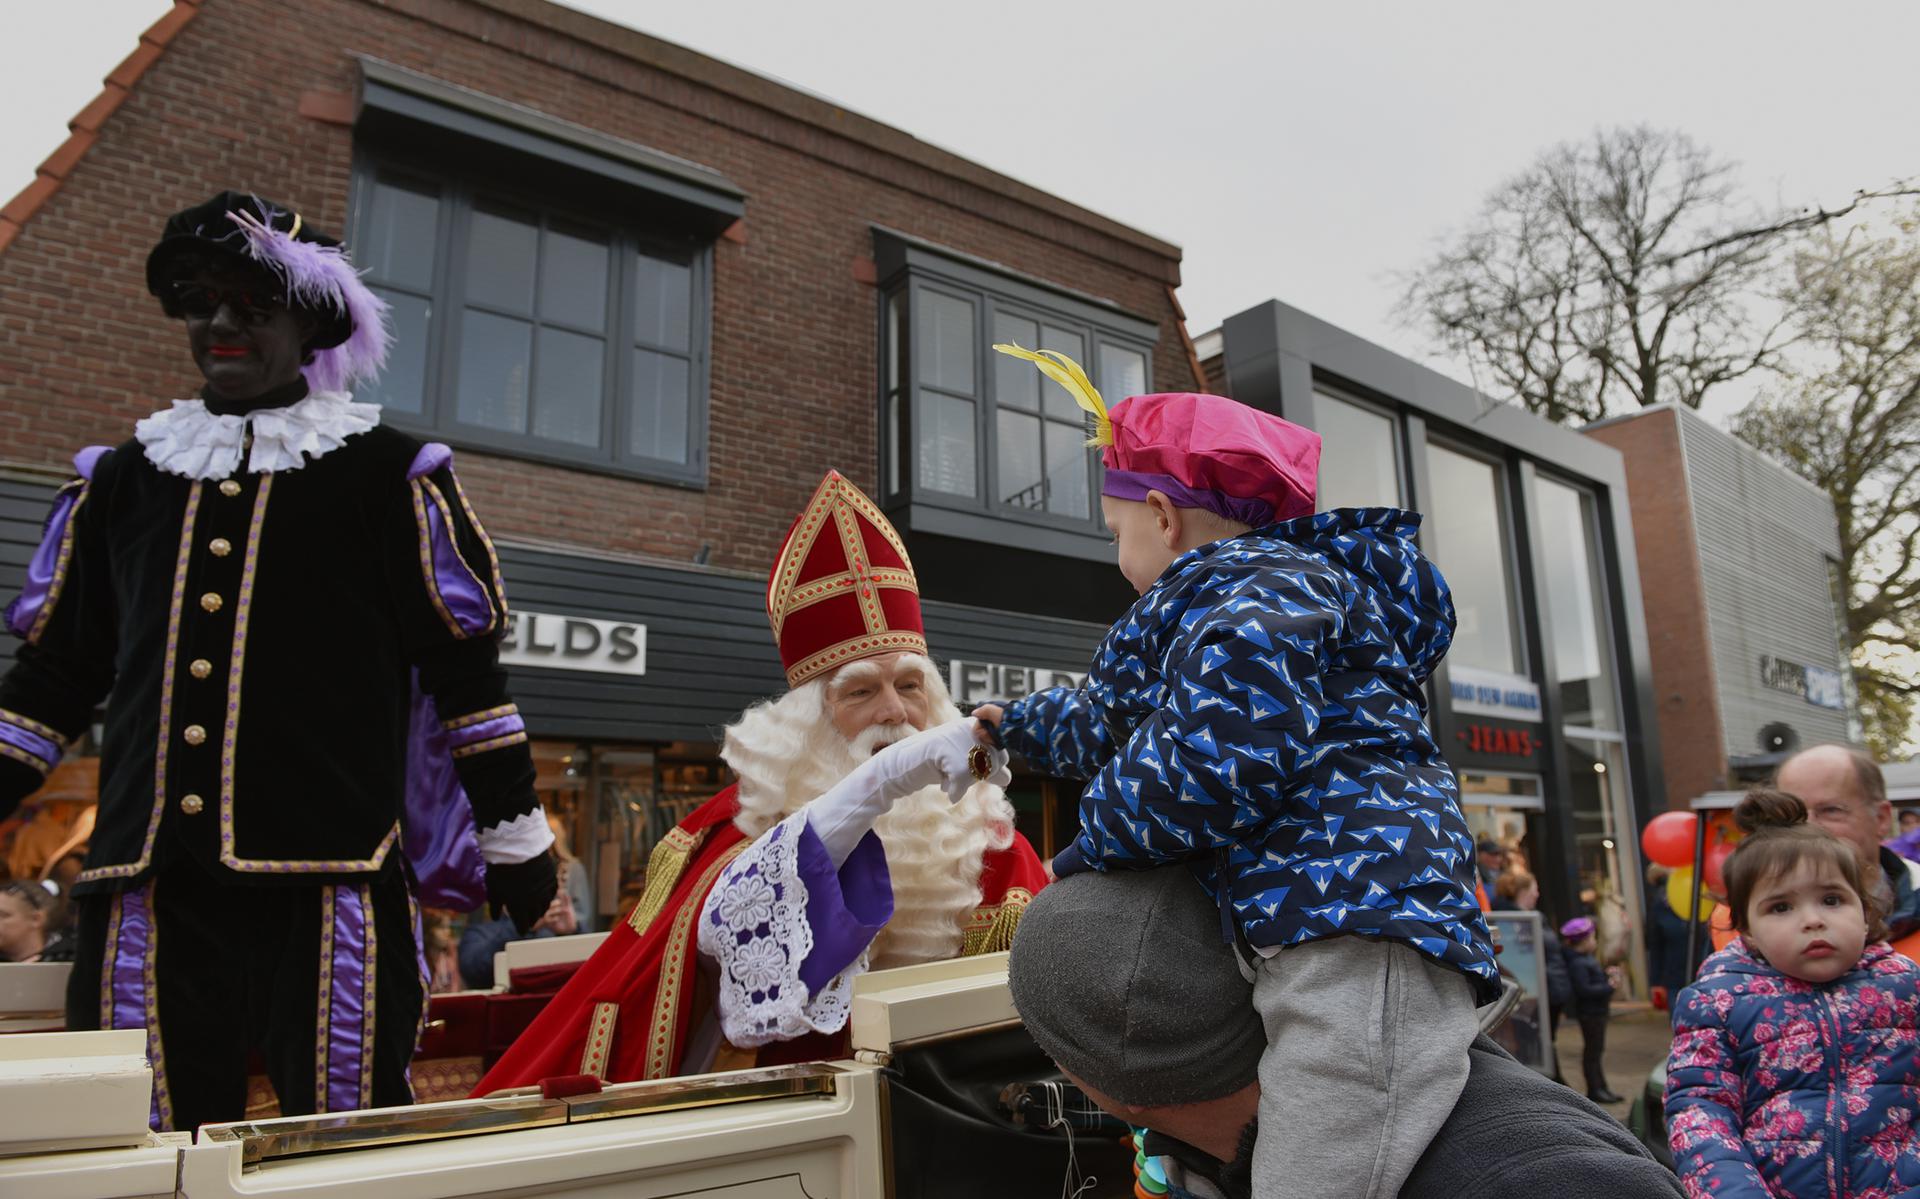  Sint en zijn Pieten reden door de winkelstraten in een rijtuig voortgetrokken door Friese paarden